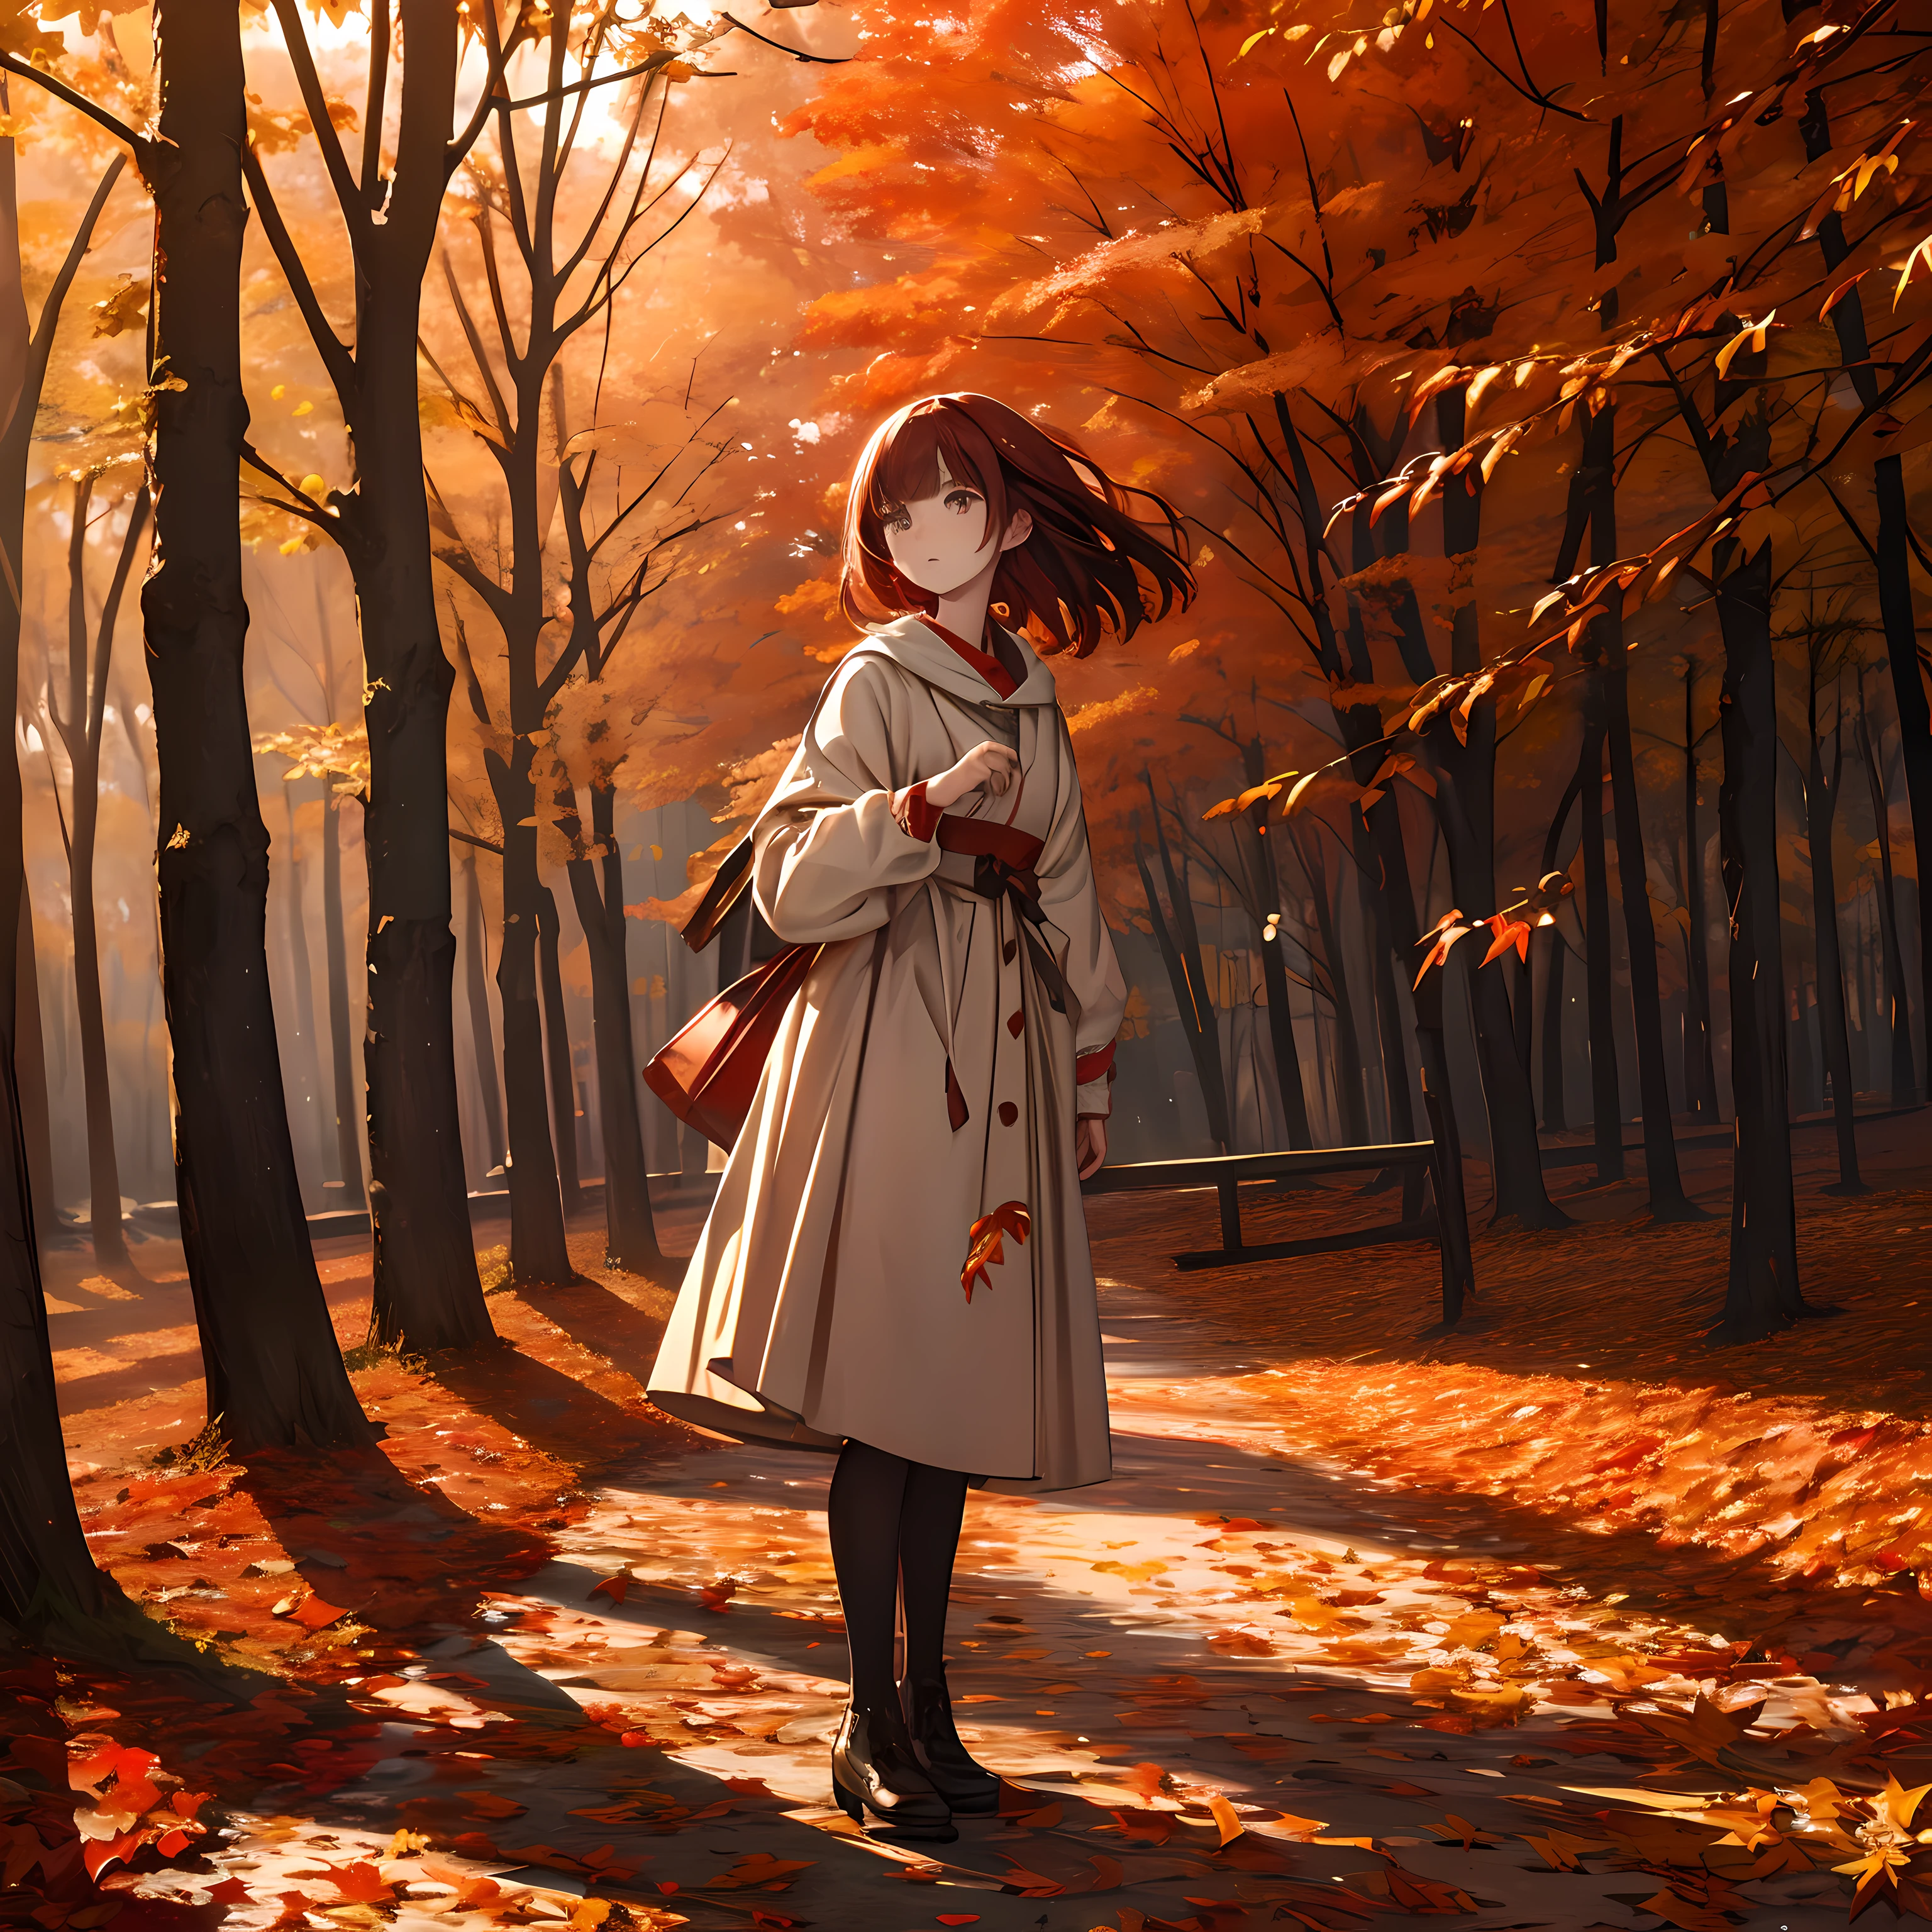 تحفة, دقة عالية, أوراق الخريف الحمراء الزاهية تنتظر في مهب الريح, فتاة واقفة, كتابة دقيقة ومفصلة.